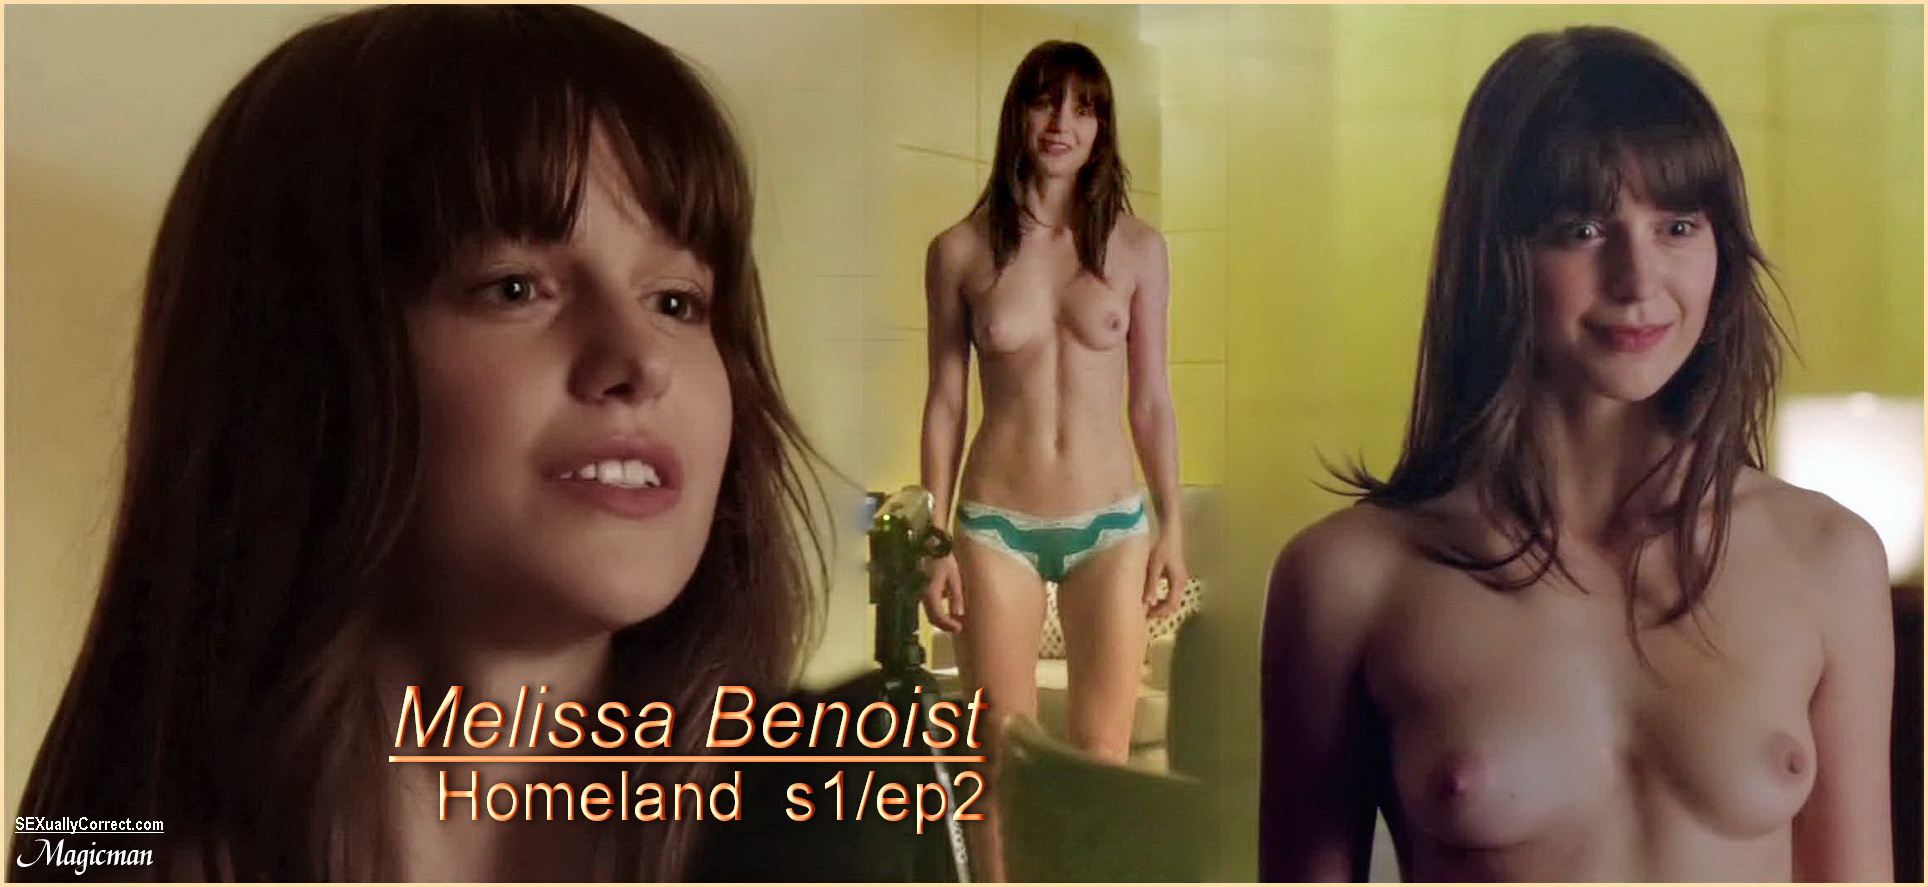 SexuallyCorrect-MelissaBenoist-Homeland-s1e2-hd1080.jpg